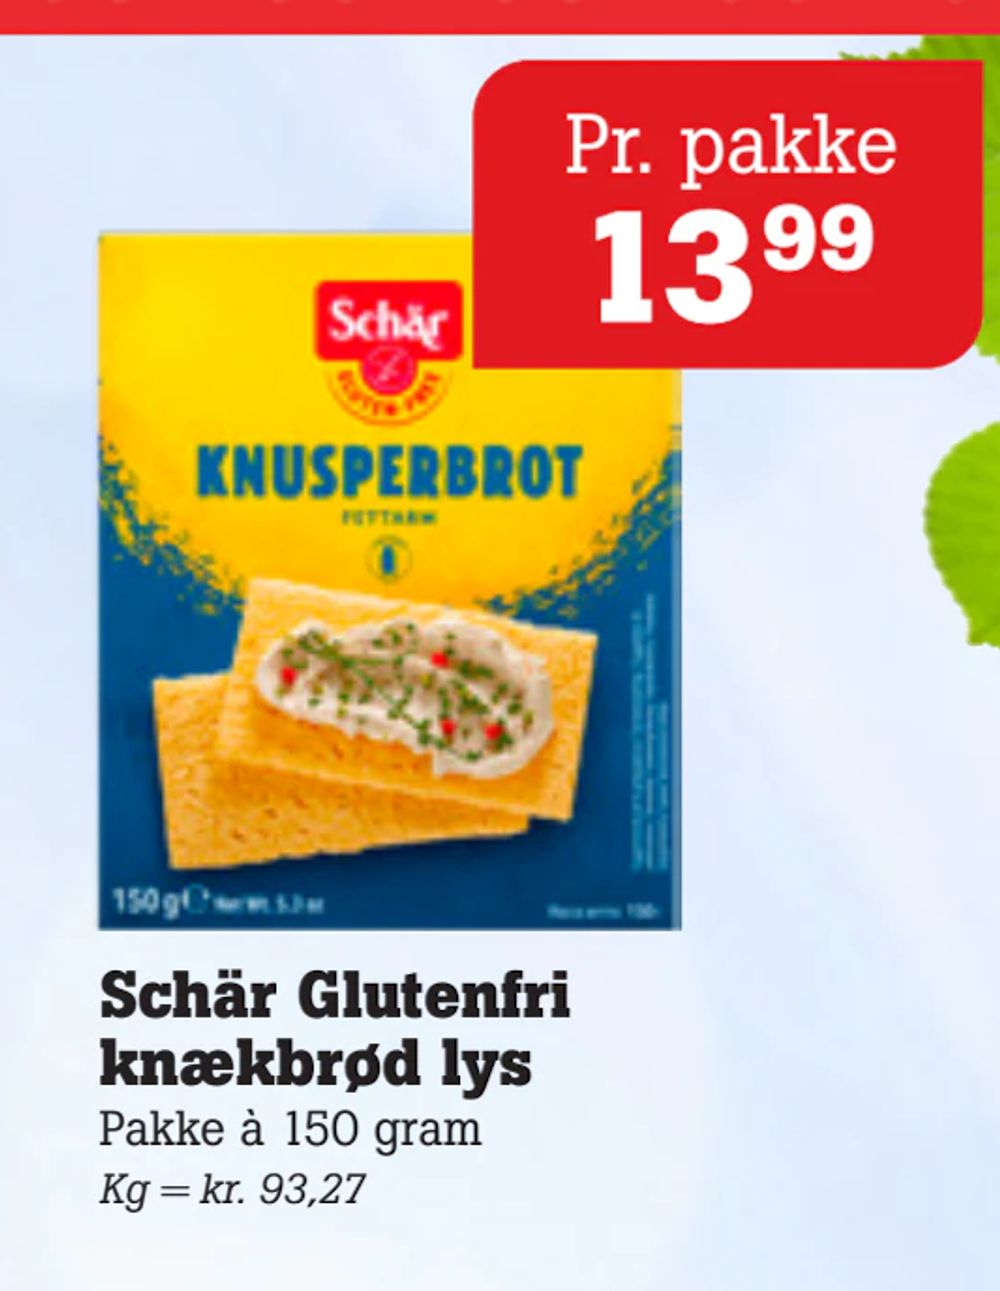 Tilbud på Schär Glutenfri knækbrød lys fra Poetzsch Padborg til 13,99 kr.